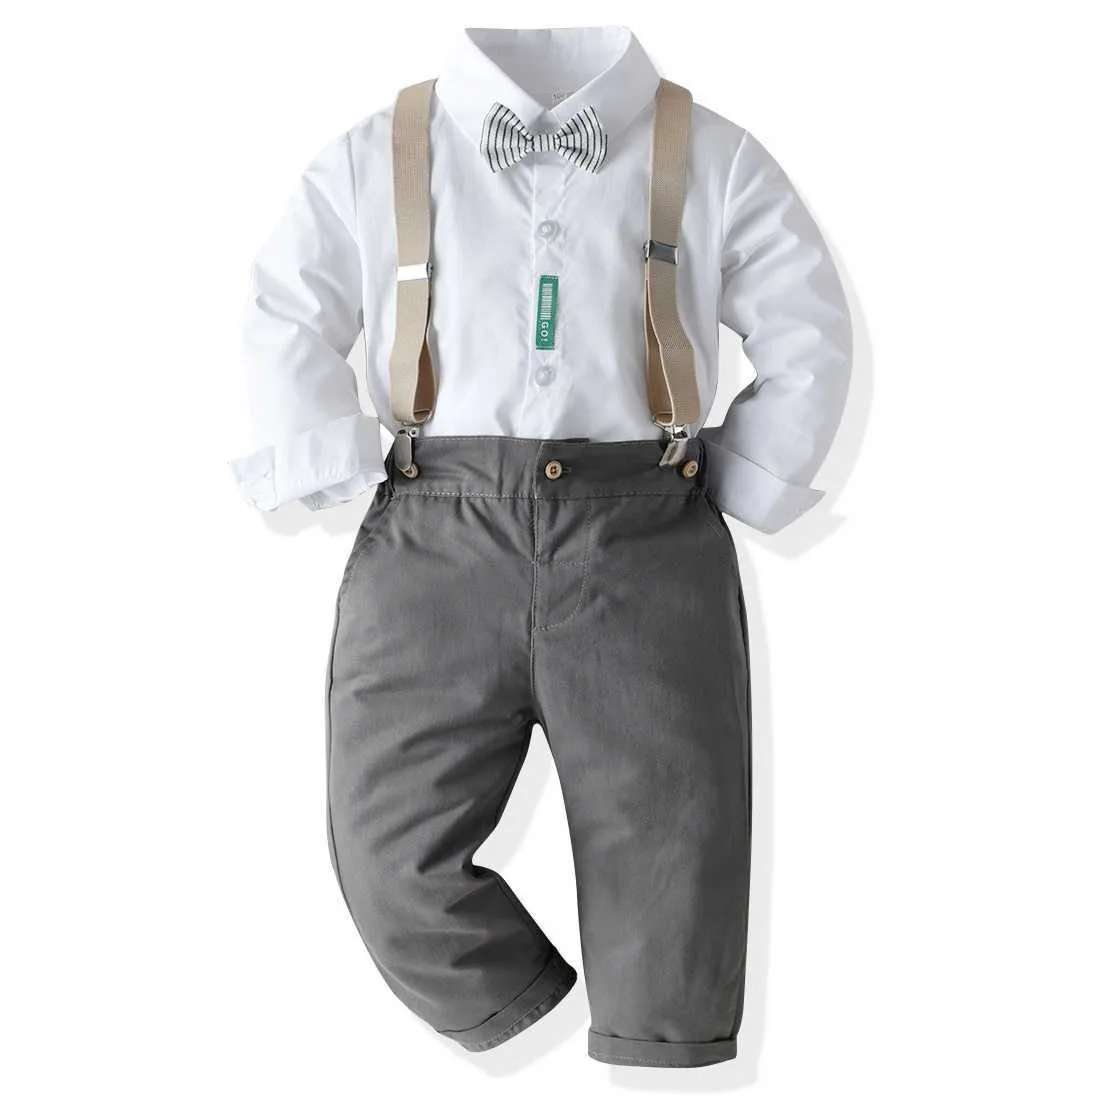 2021 ملابس الأطفال العصرية مجموعات قميص أبيض ملابس رسمية ملابس أطفال ملابس شهم البدلة الفتيان تتسابق روبا دي بيبي H1023